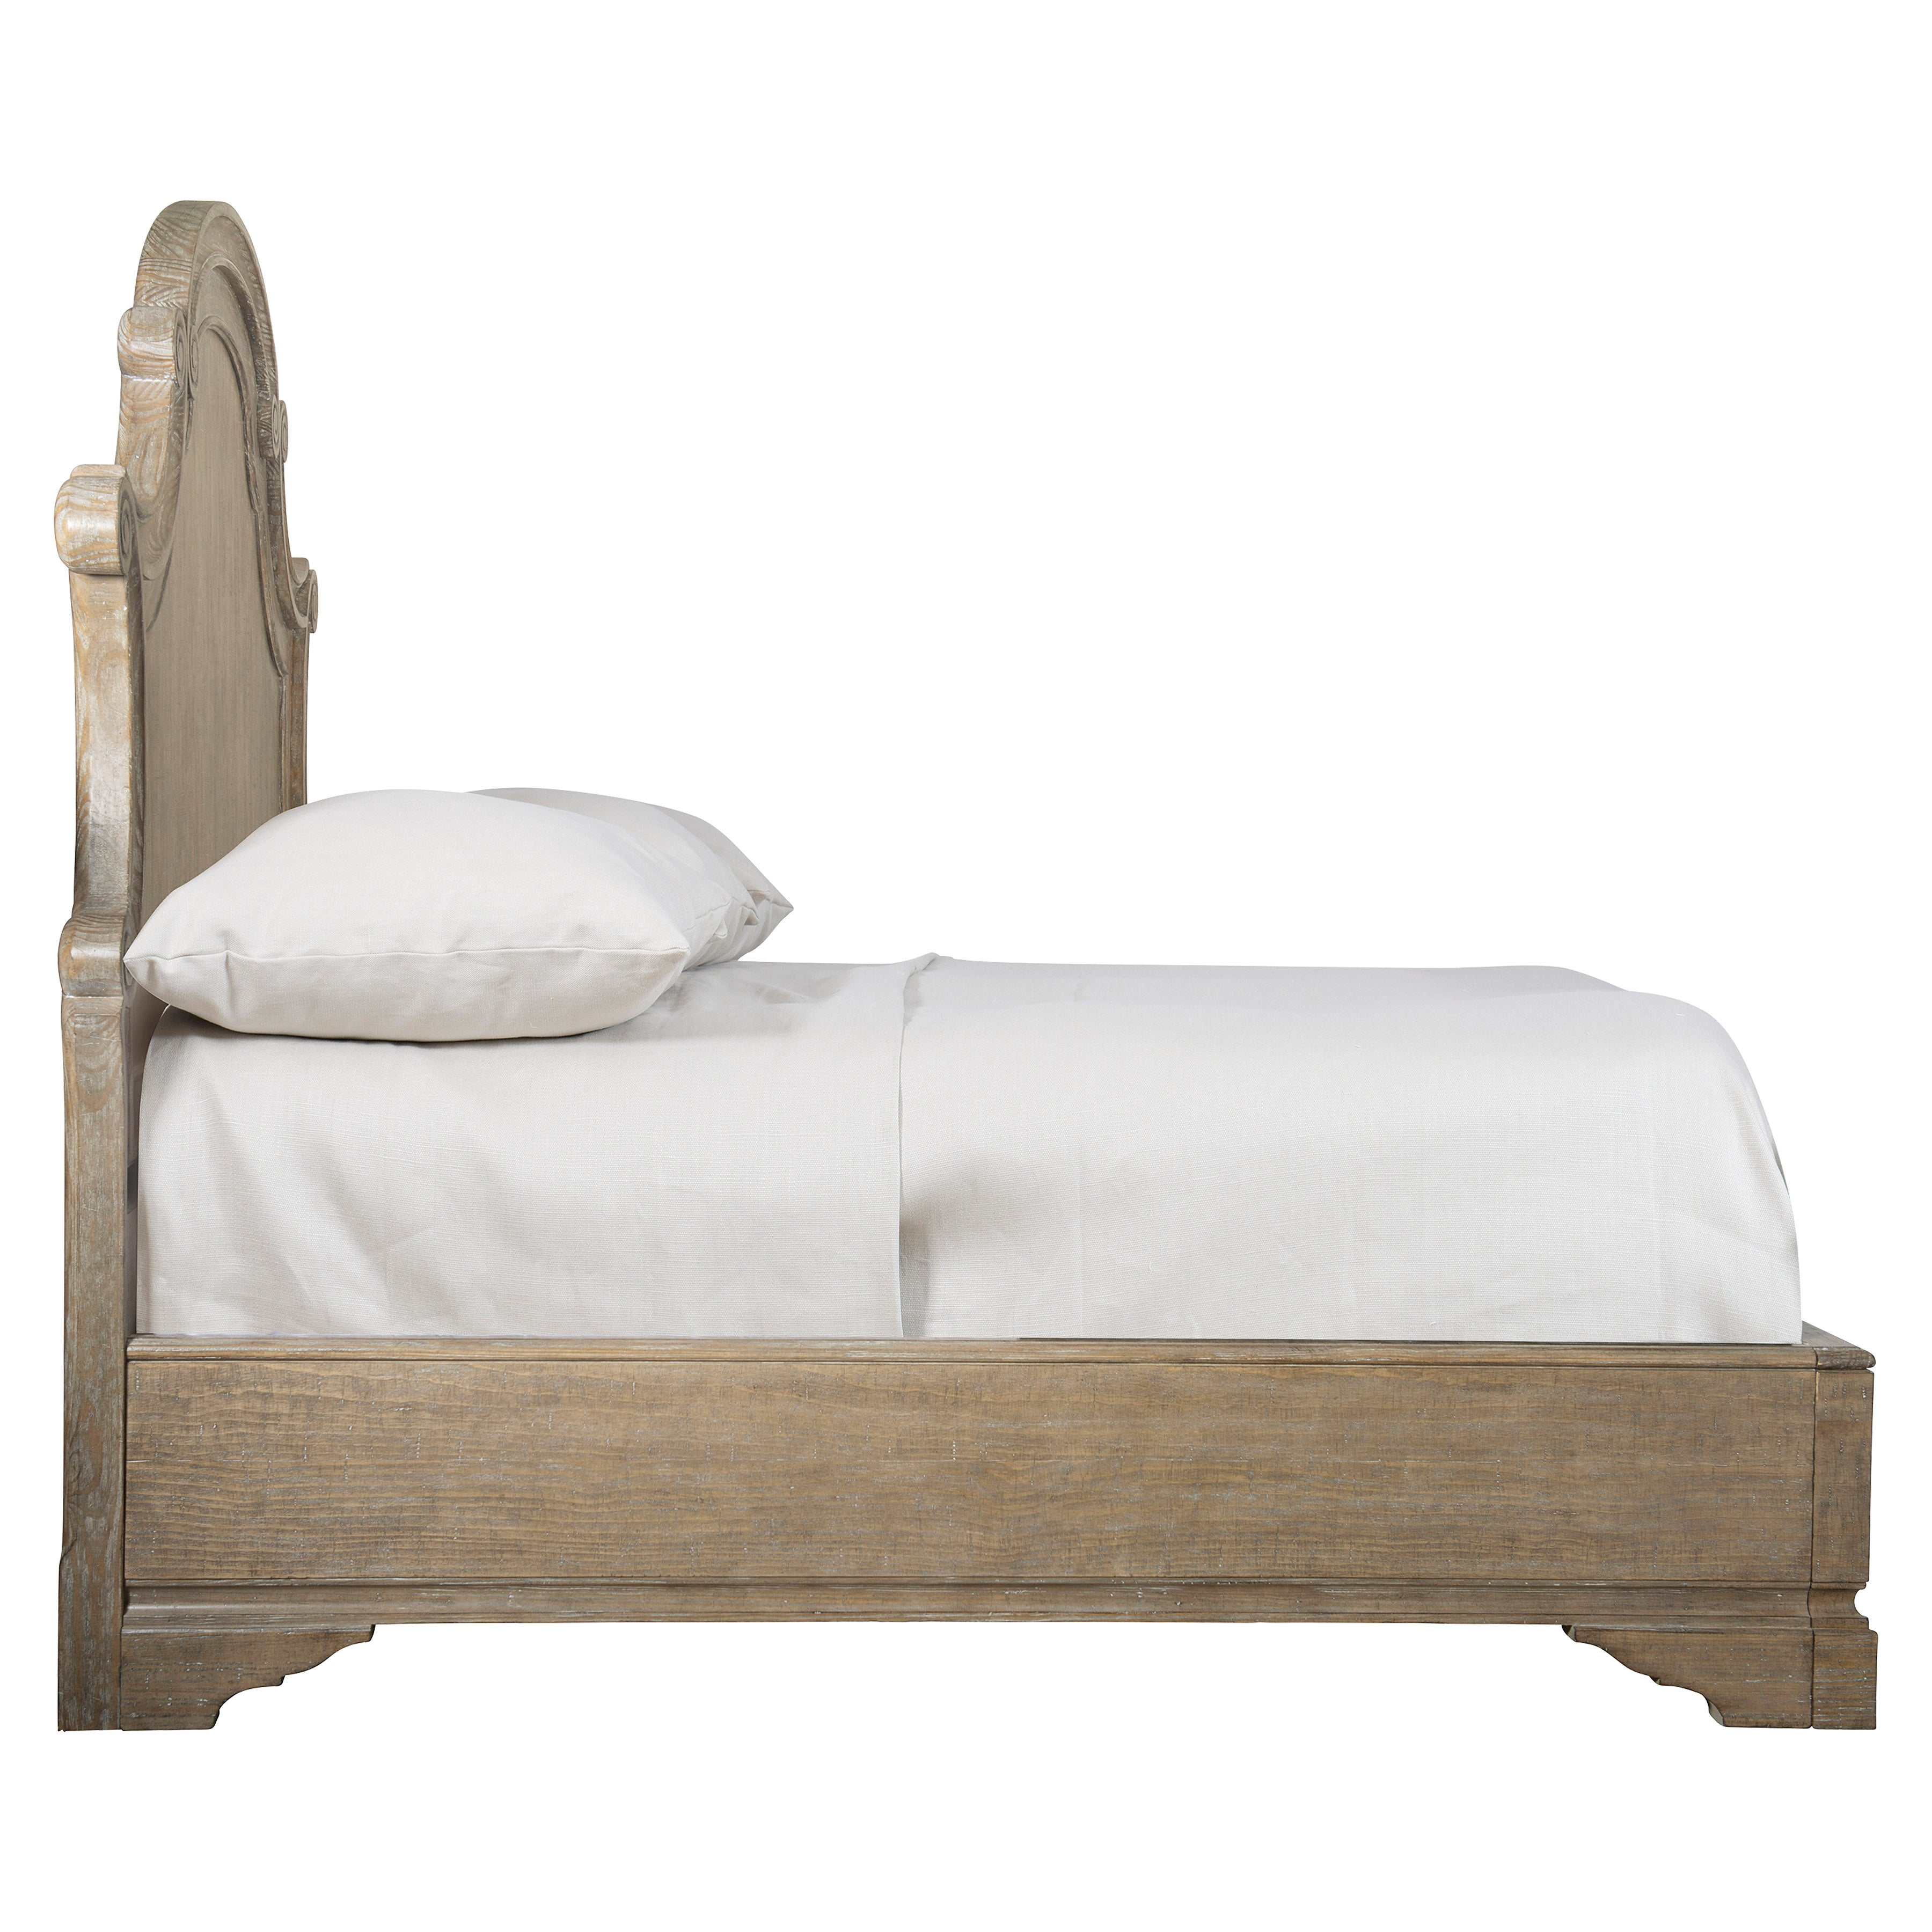 Villa Toscana Wooden Queen Panel Bed